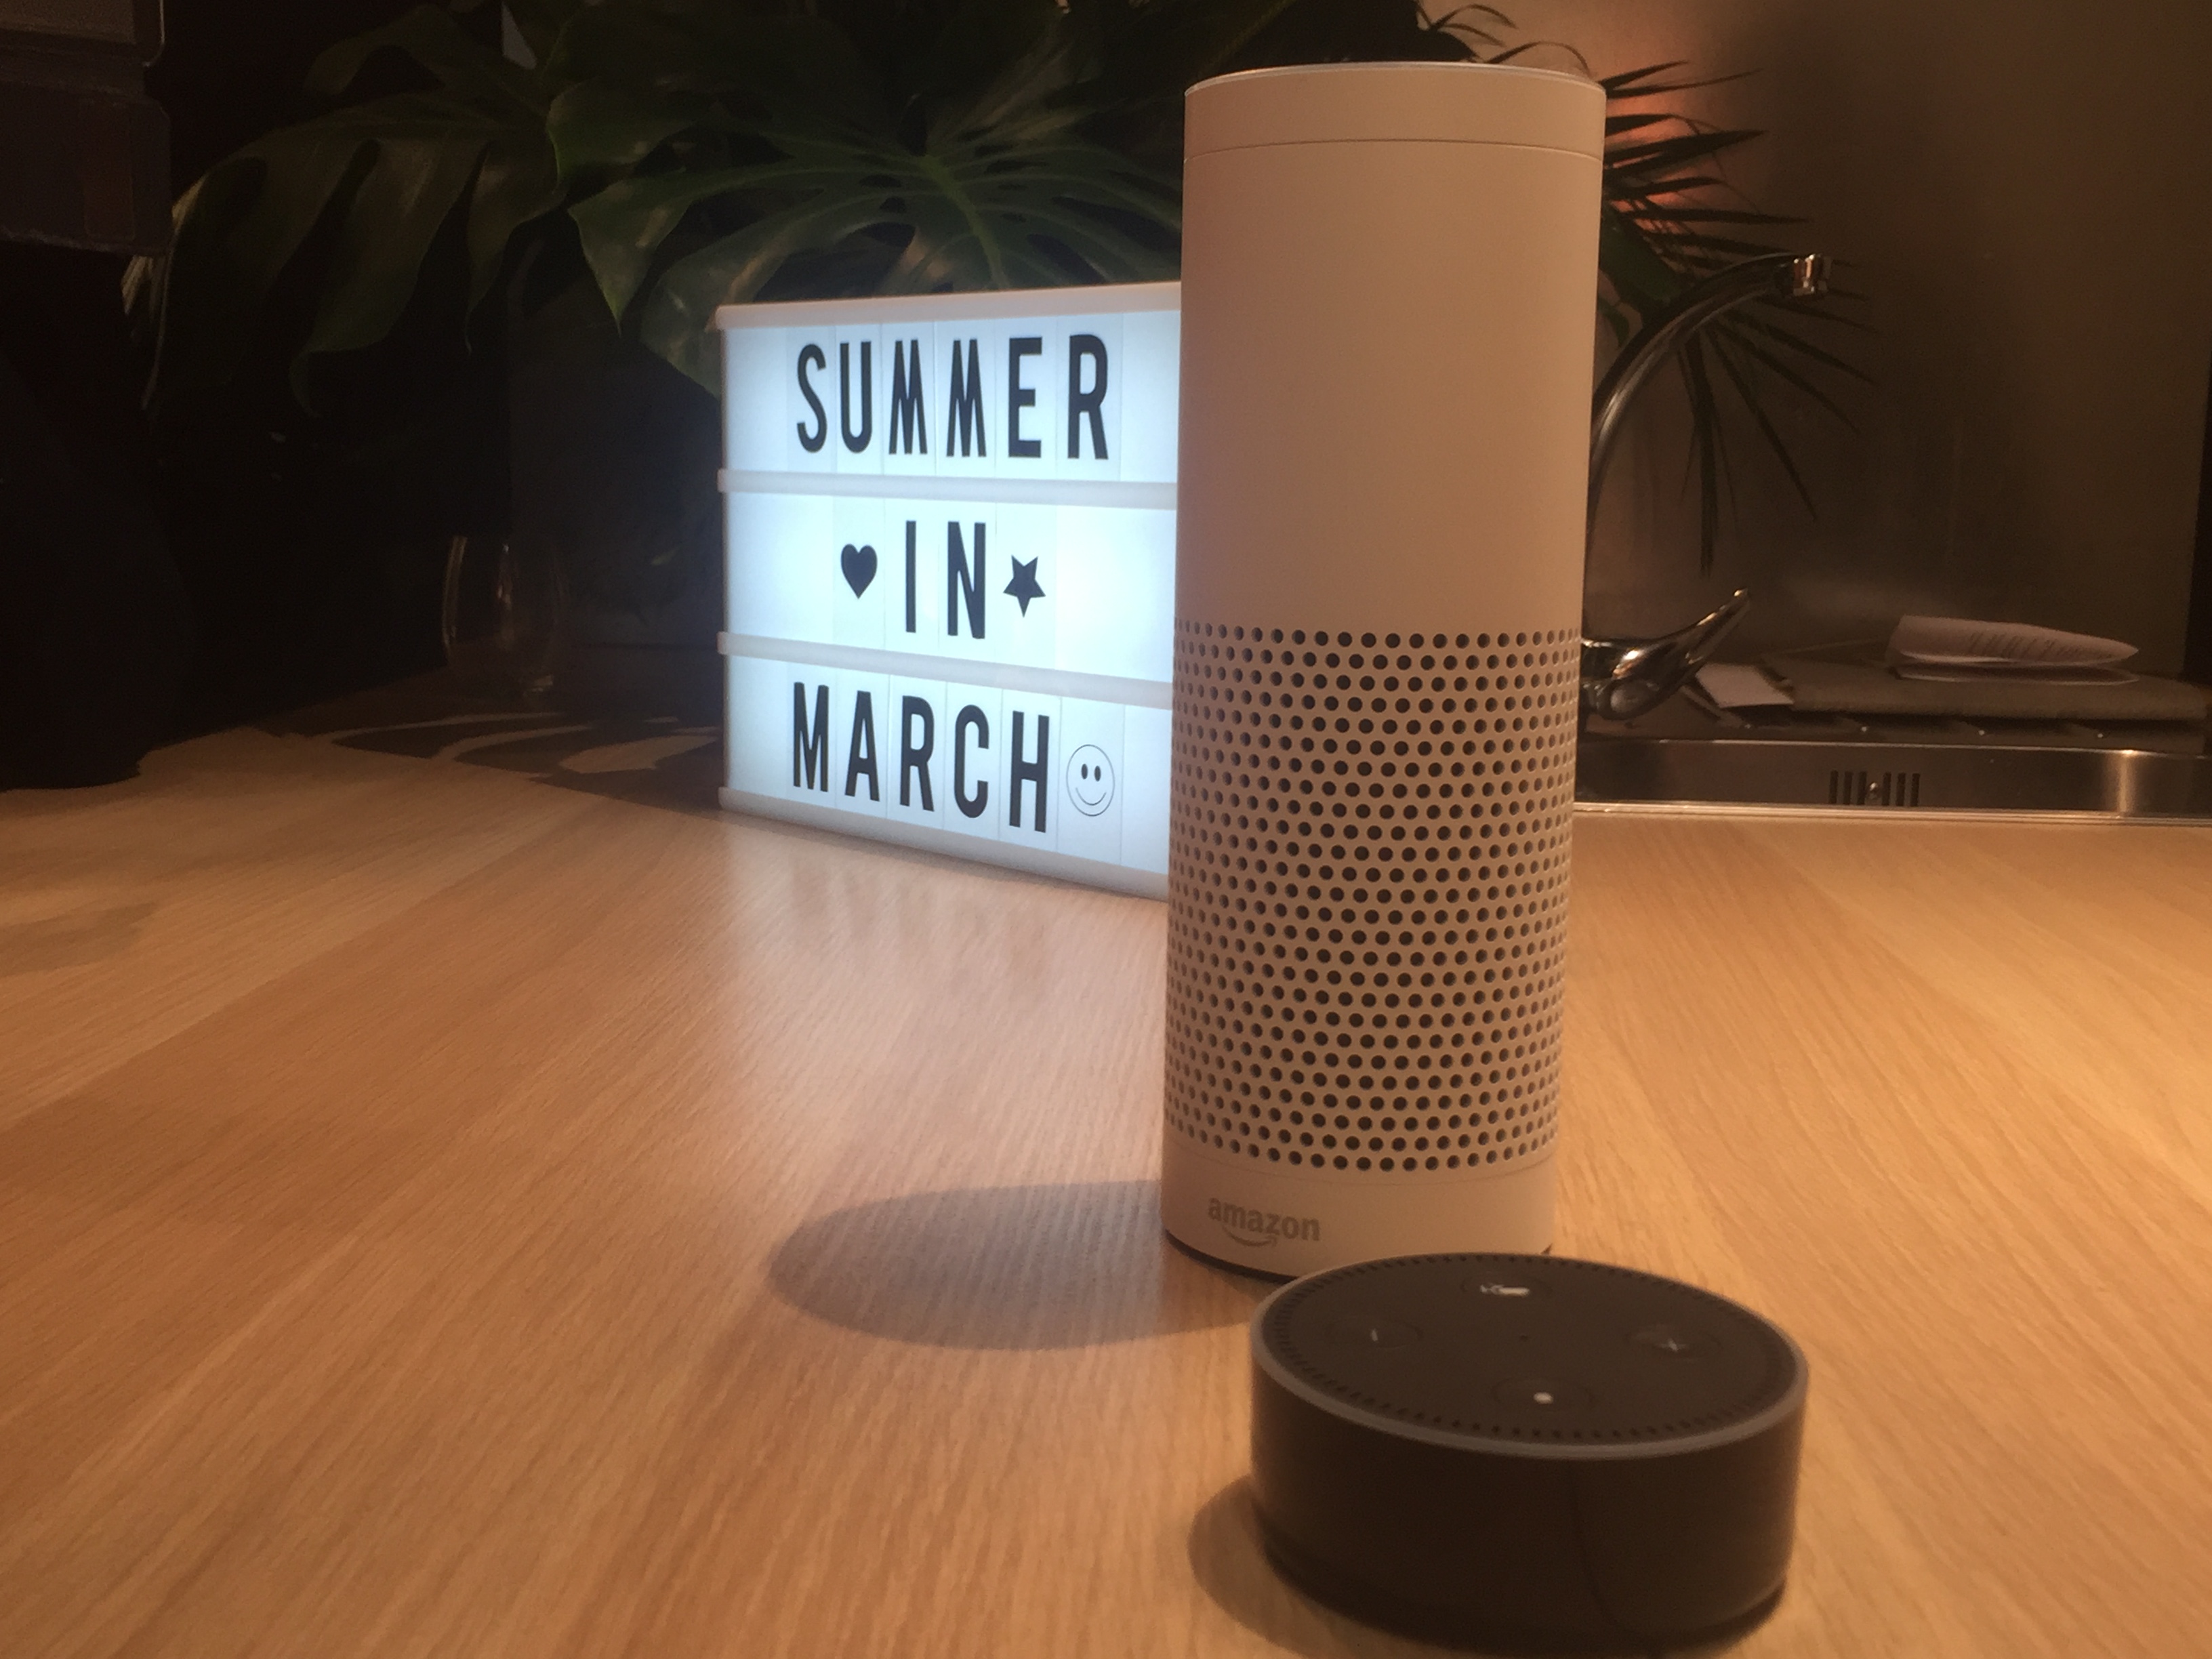 Echo y Echo Dot, los asistentes personales de Amazon que funcionan a trevés del sistema Alexa